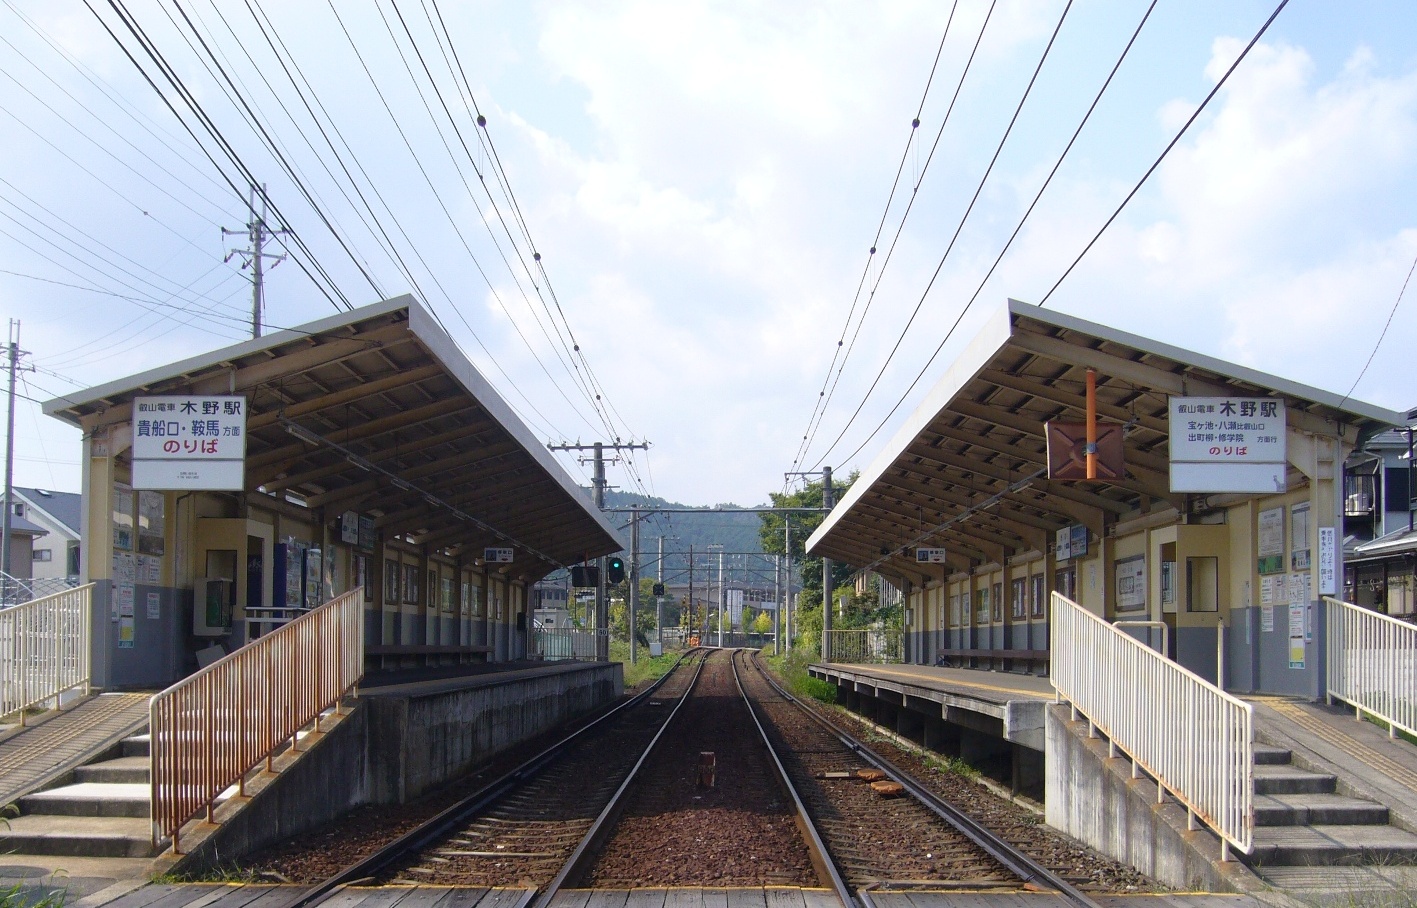 【東南西北】—日本四大最遠車站